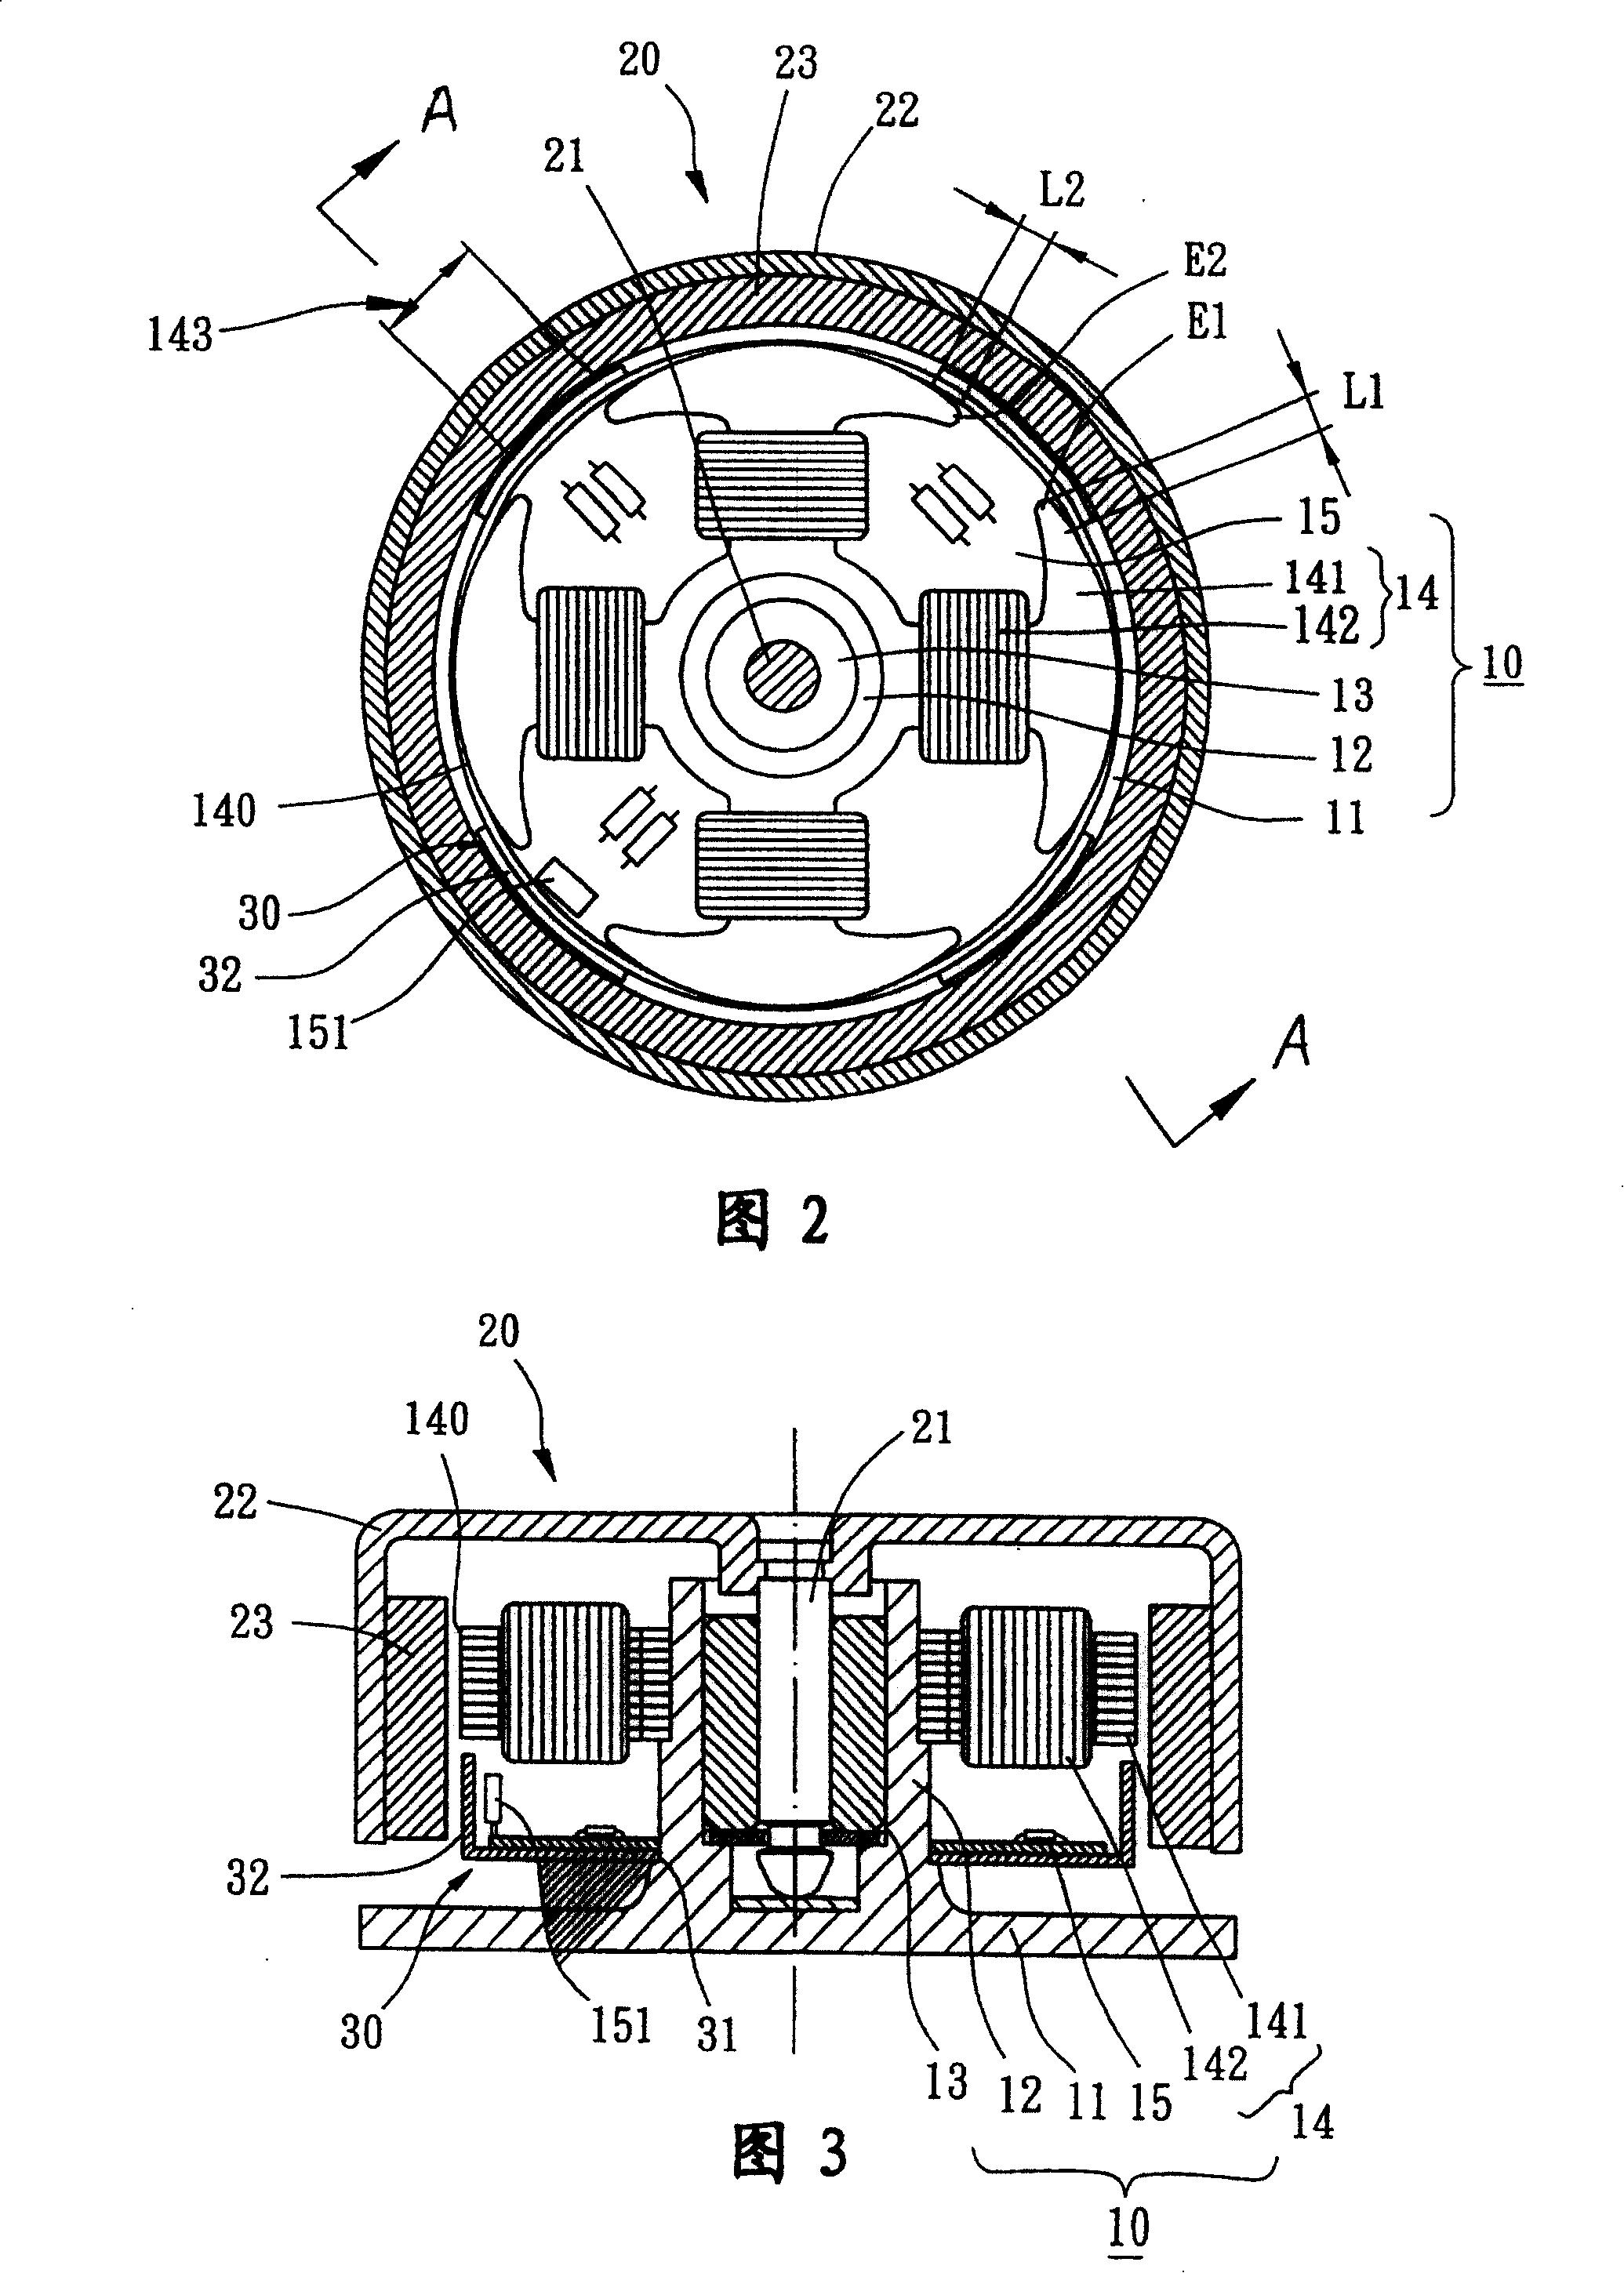 Motor with magnetic-sensing balance sheet